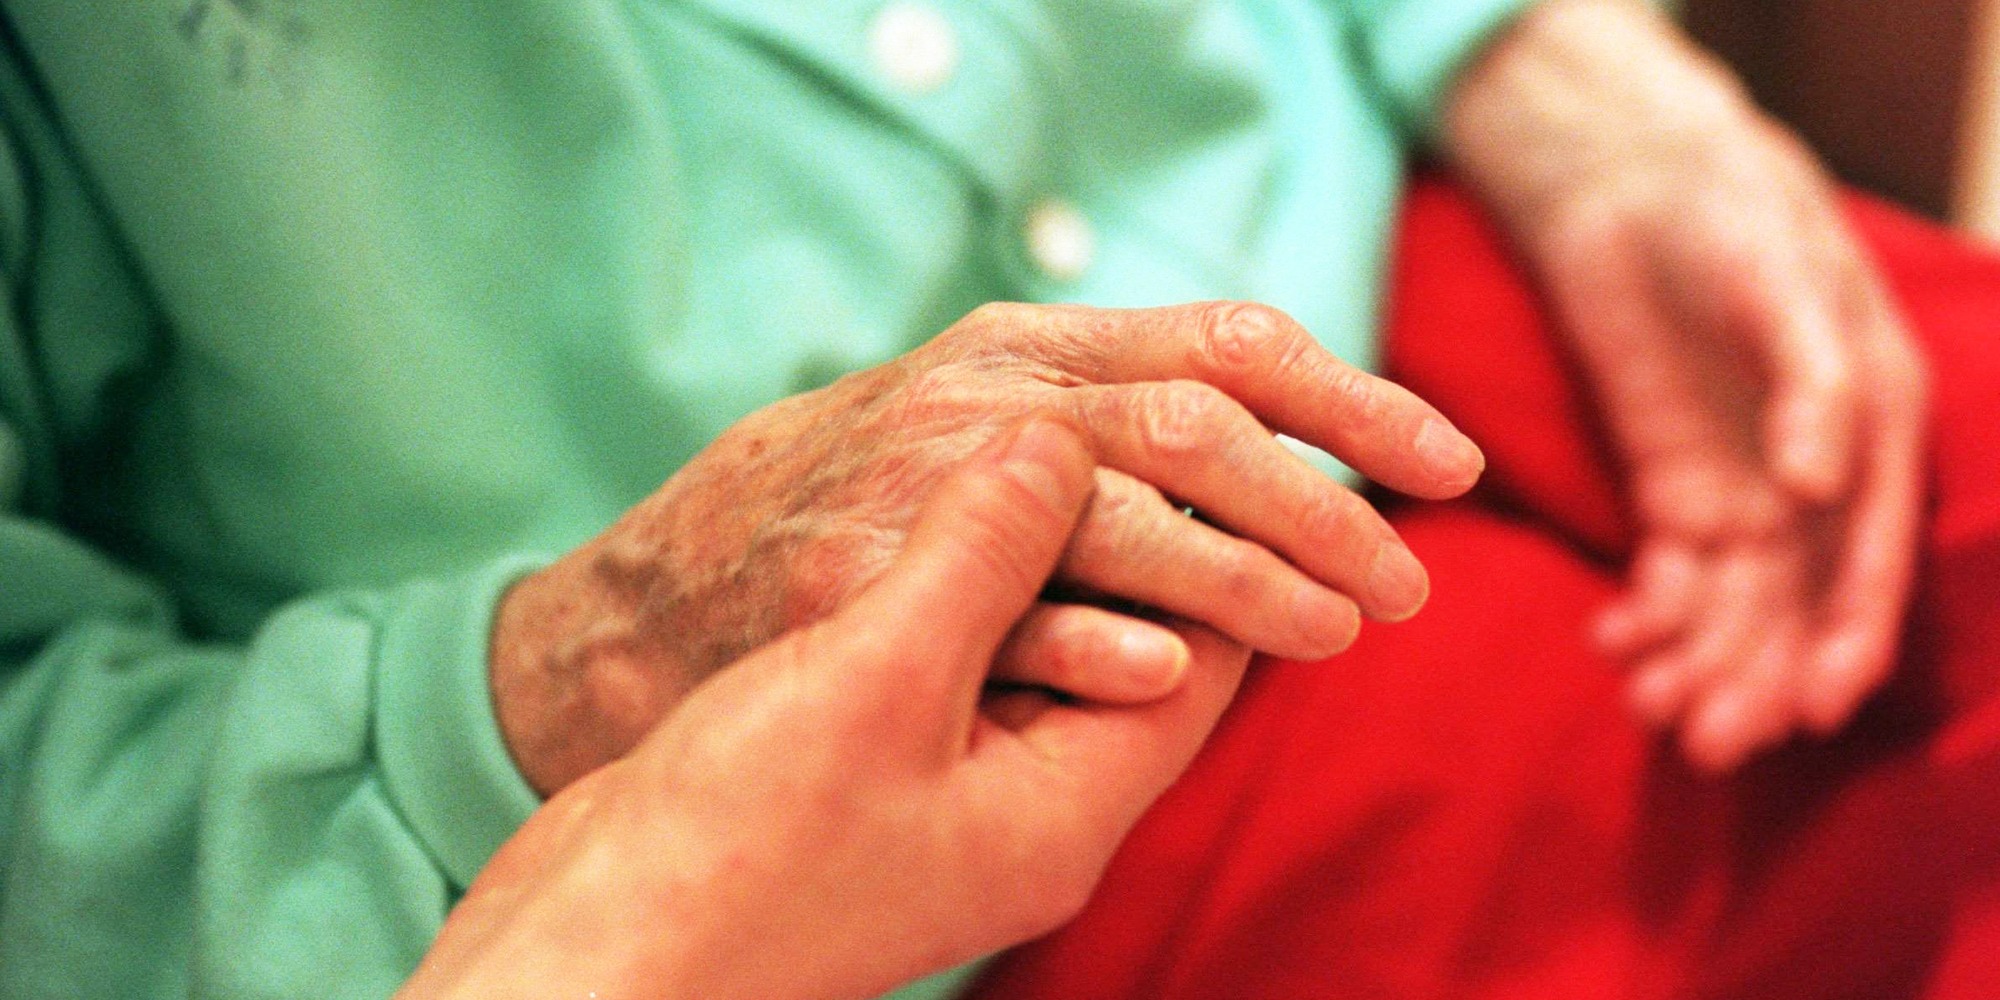 Händer mot ett rött täcke i en säng. En yngre person håller i en äldre persons ena hand.